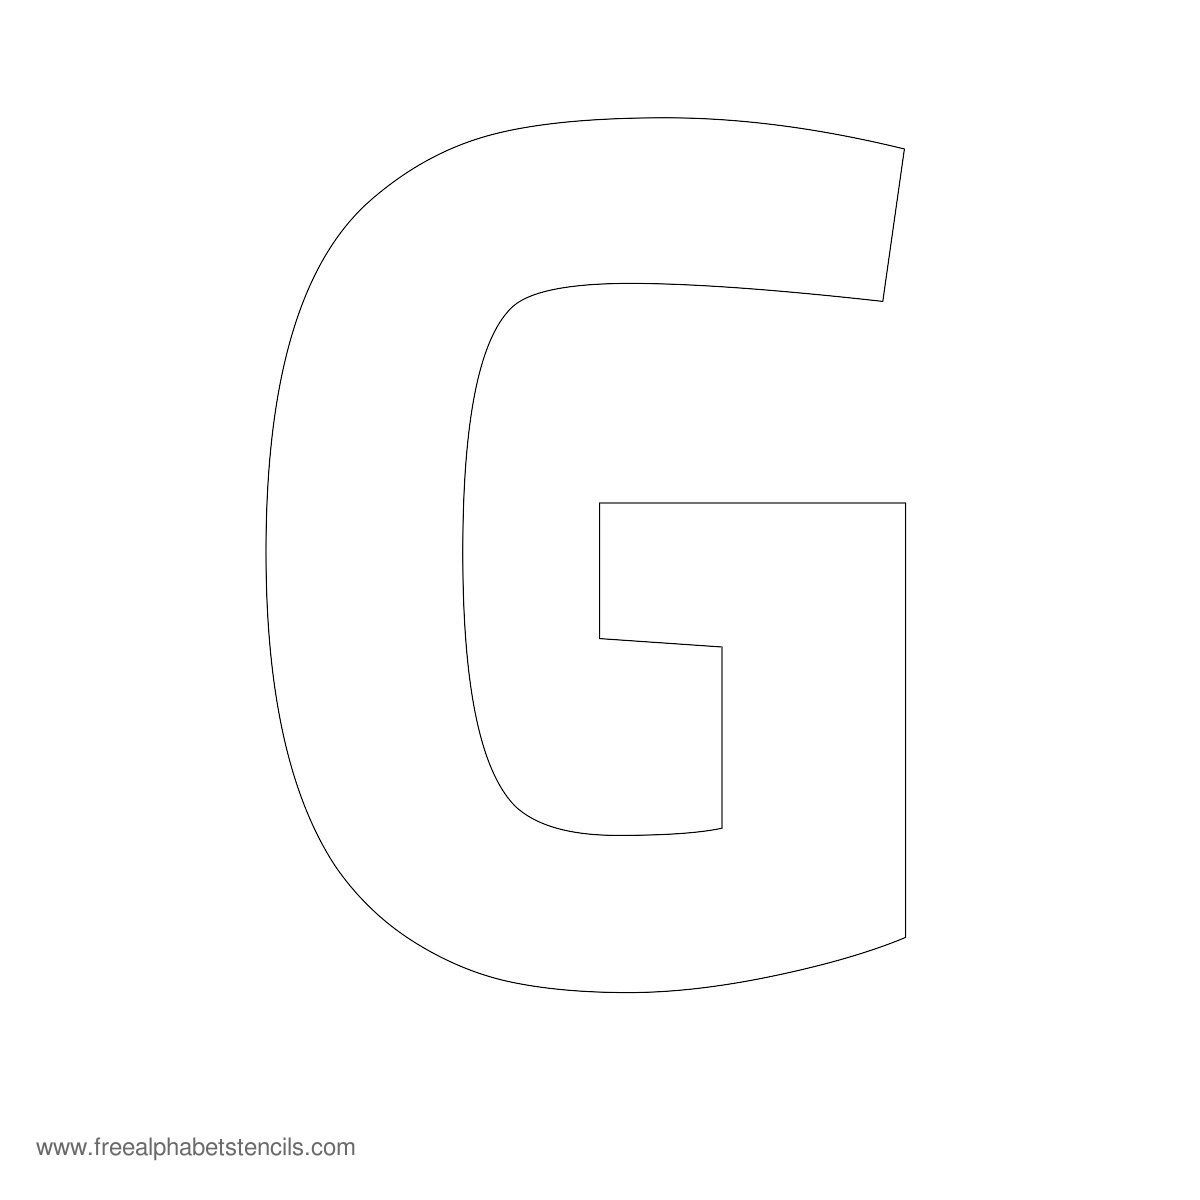 字母“G”的模板